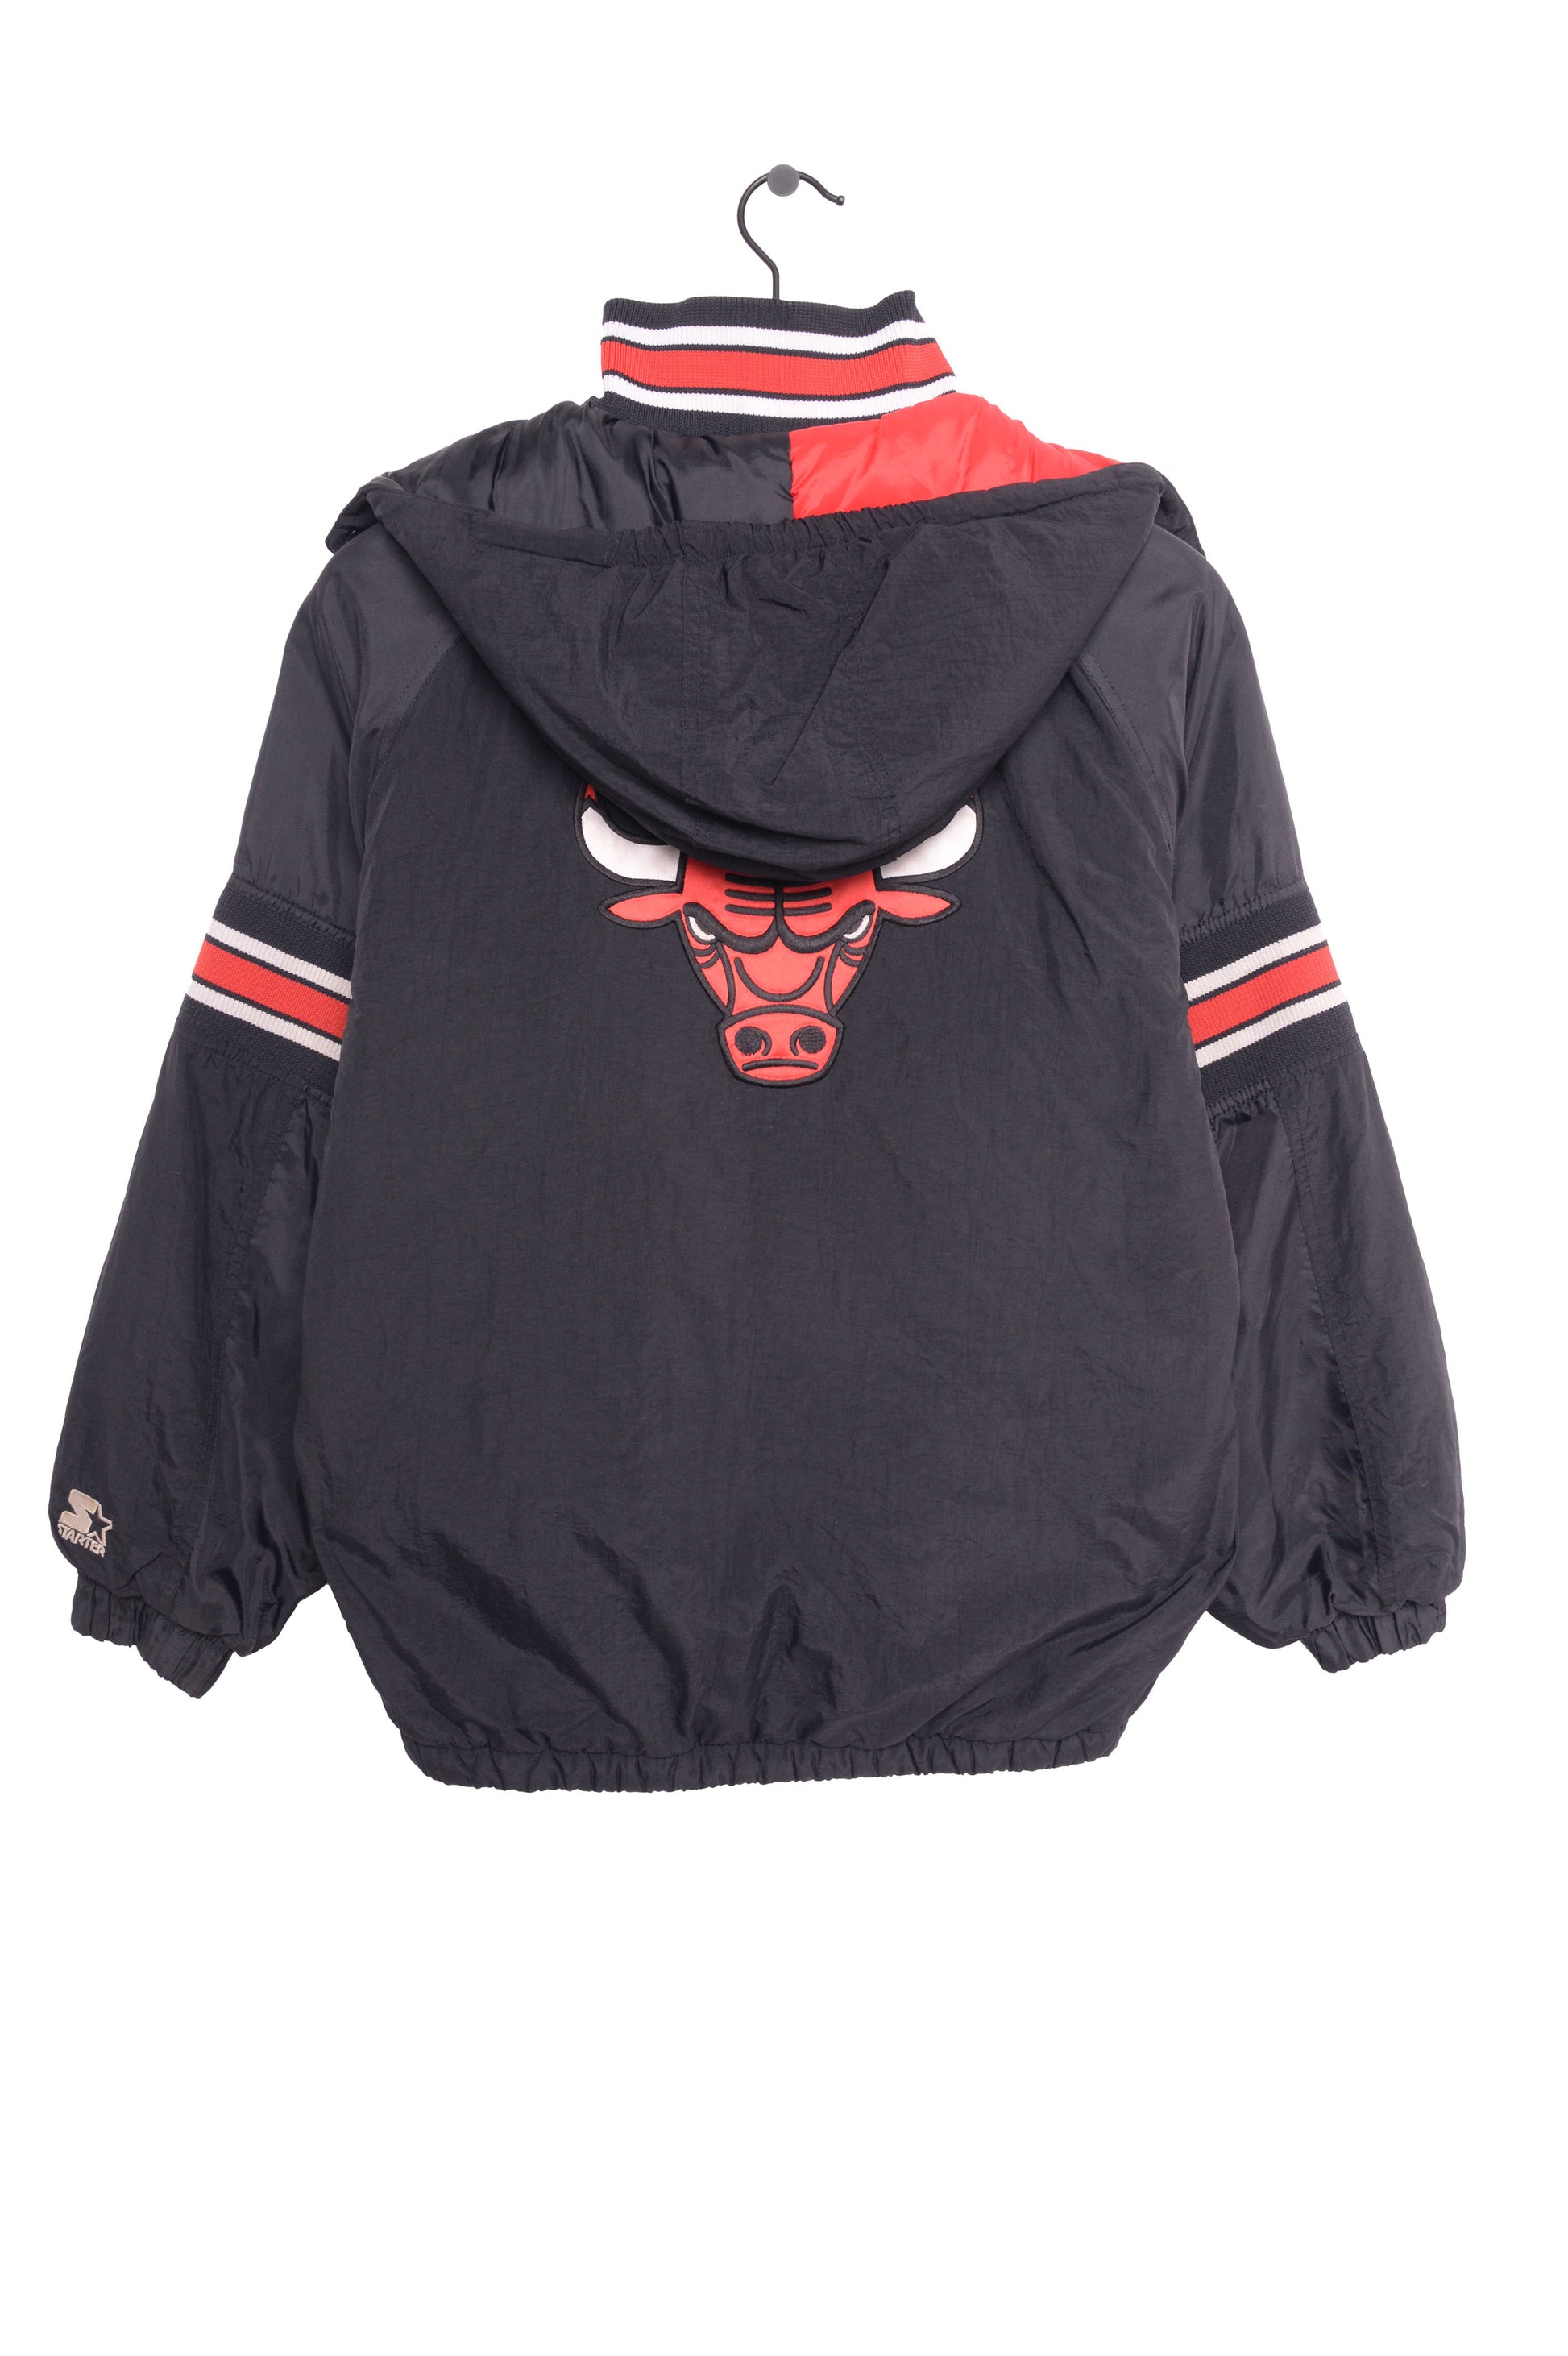 Vintage 90s Chicago Bulls Starter Jacket with Fur Lined Hood